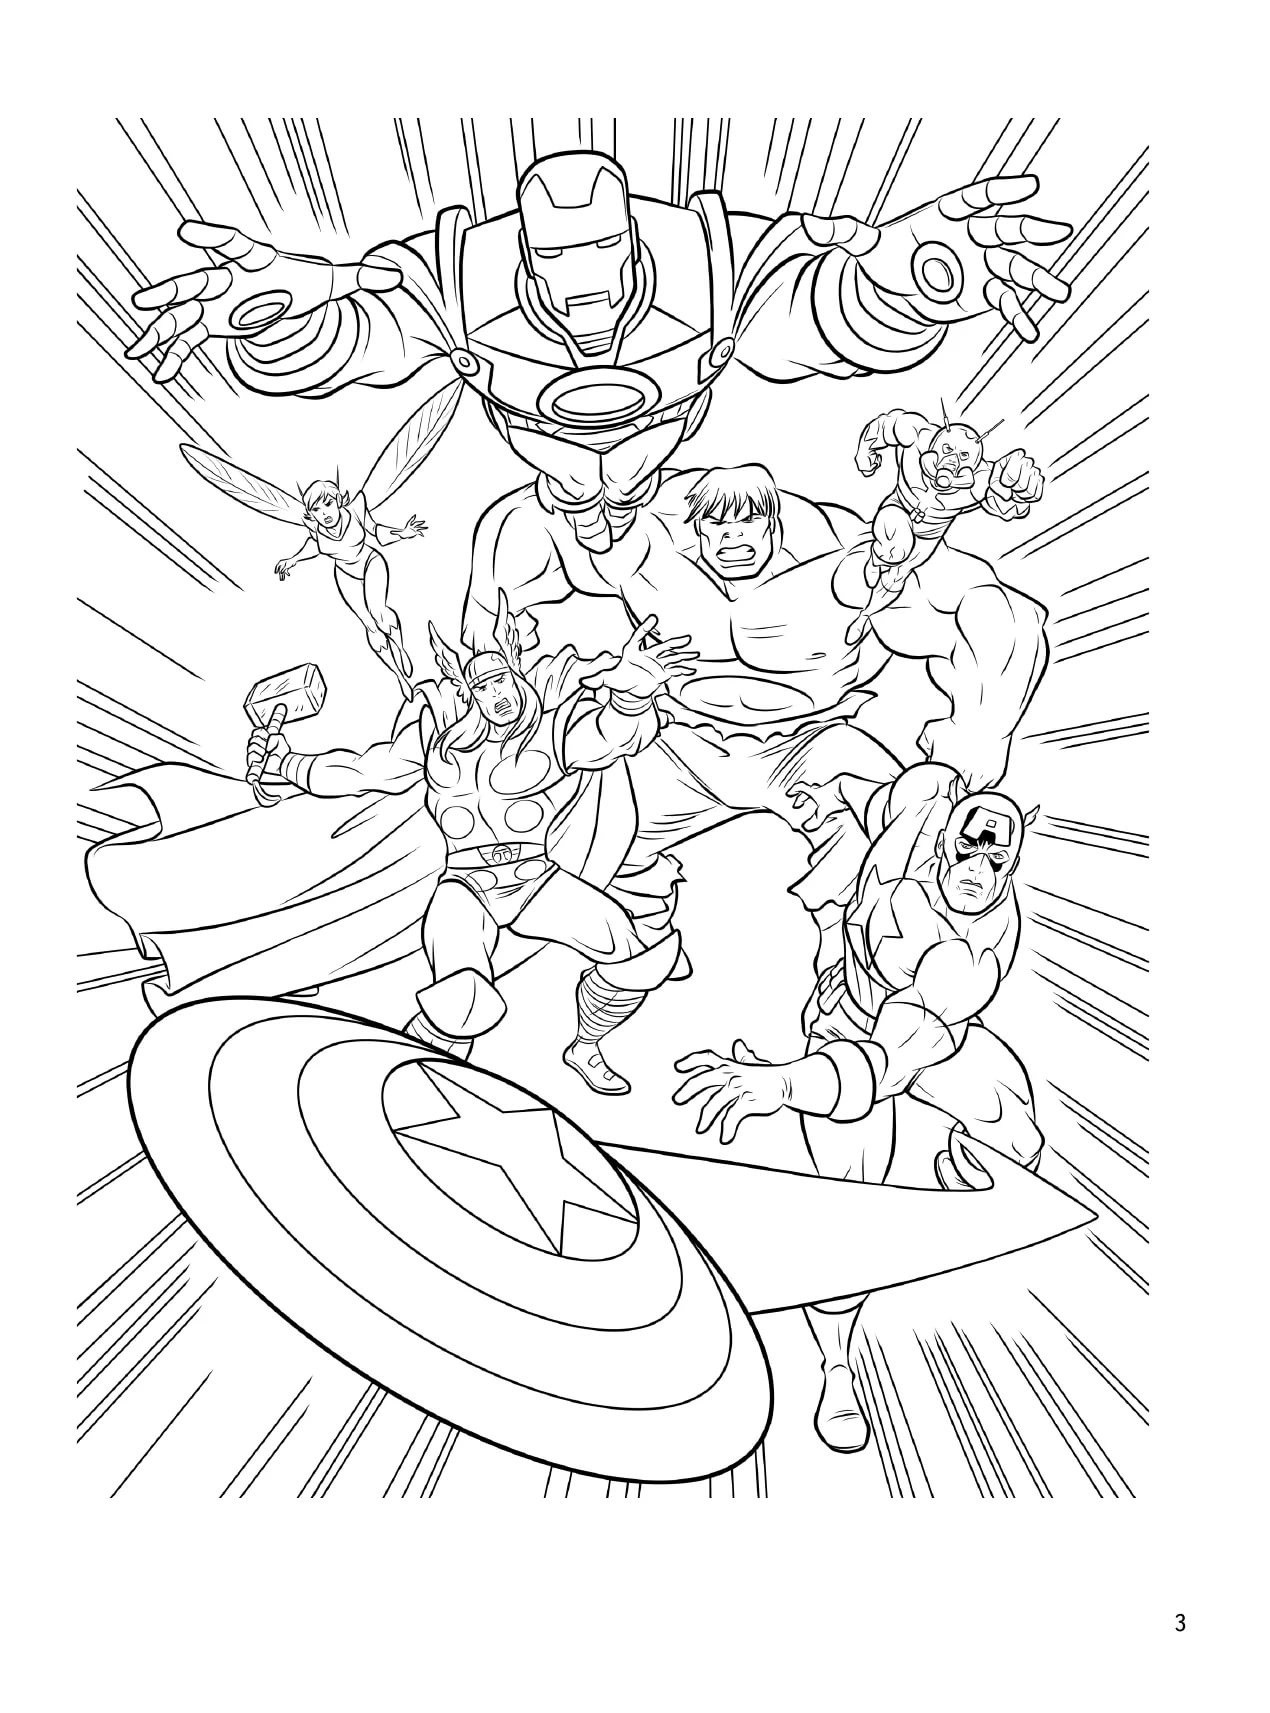 Disegno 04 di Avengers da stampare e colorare